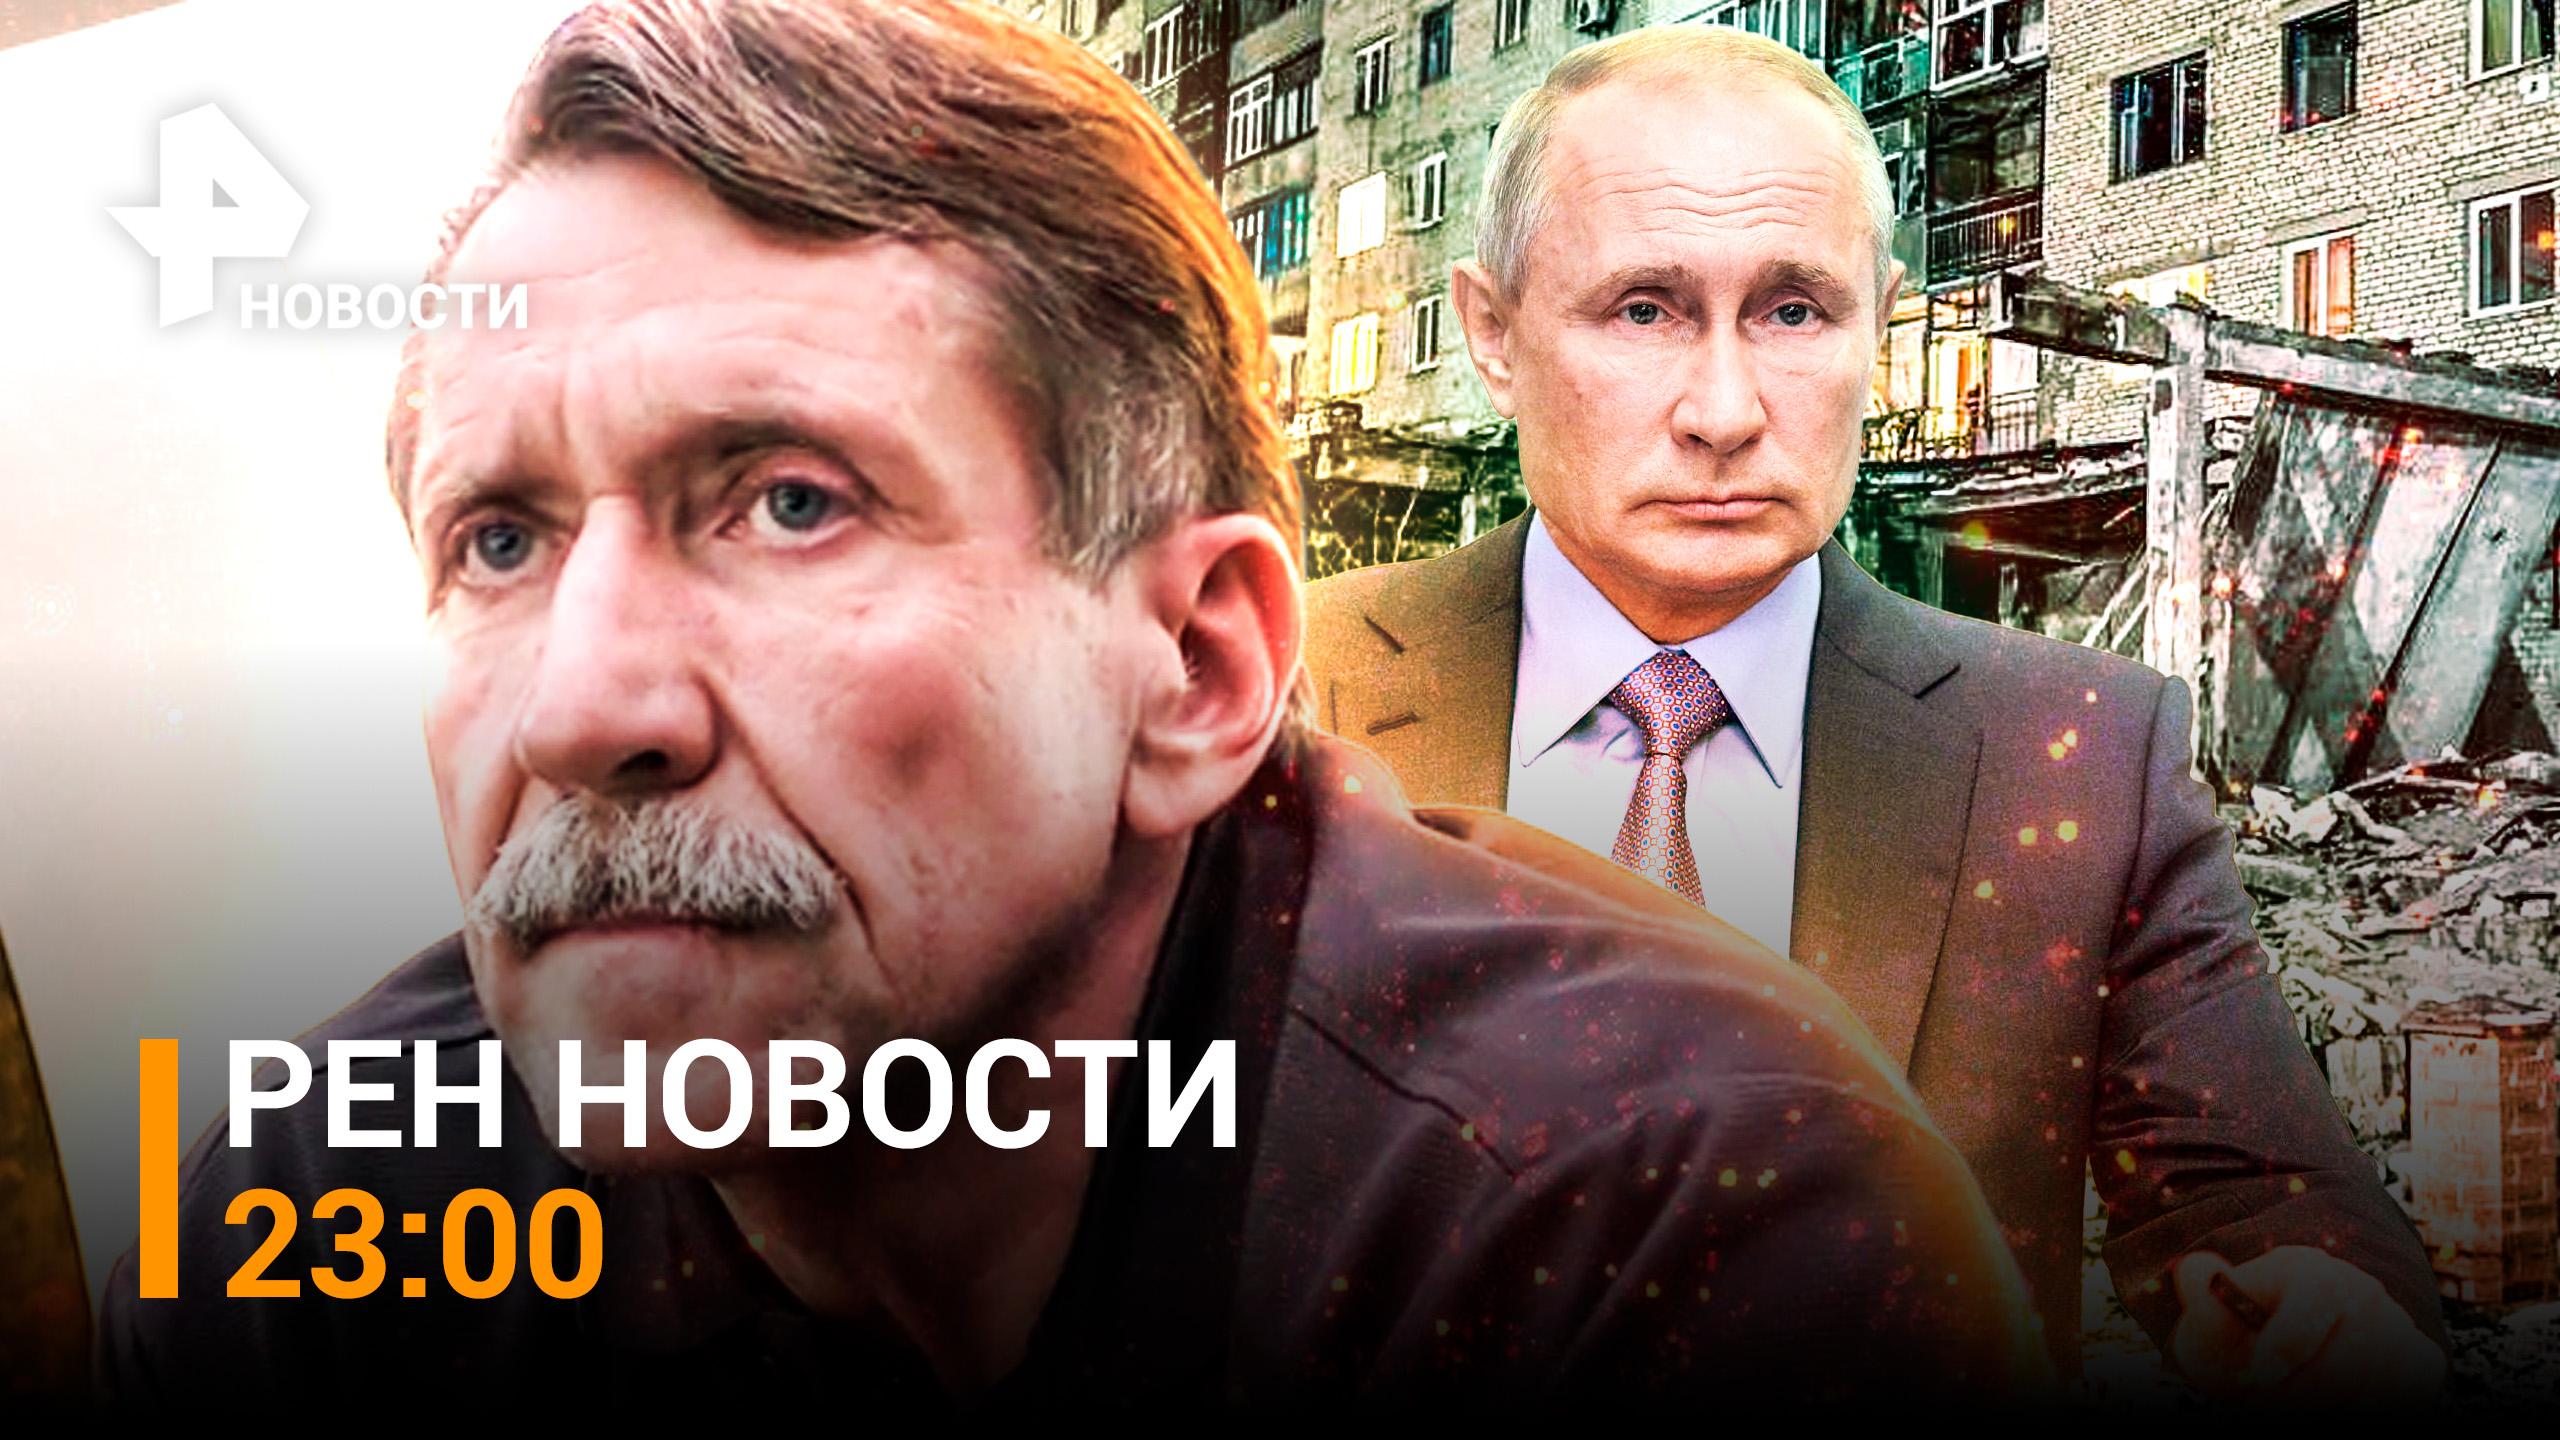 Как изменился Виктор Бут в тюрьме / ООН осудила обстрелы Донецка /РЕН ТВ НОВОСТИ 8 декабря 22, 23:00